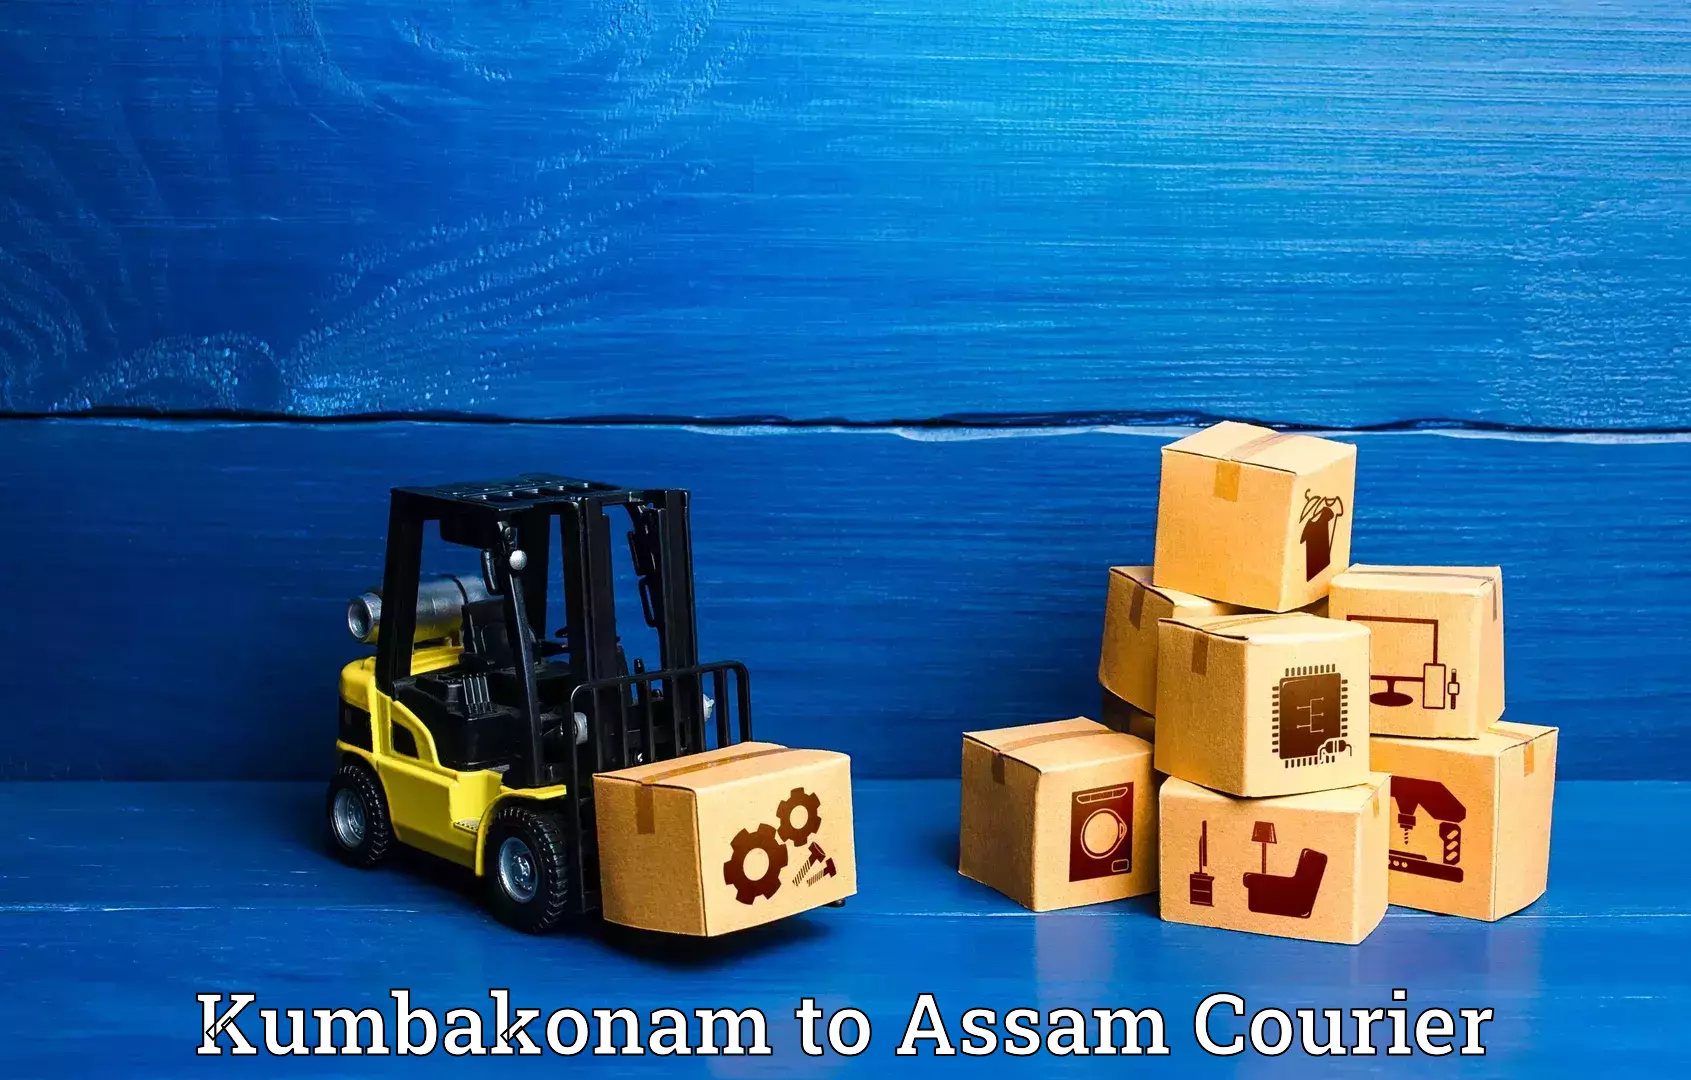 Luggage shipment specialists Kumbakonam to Lala Assam